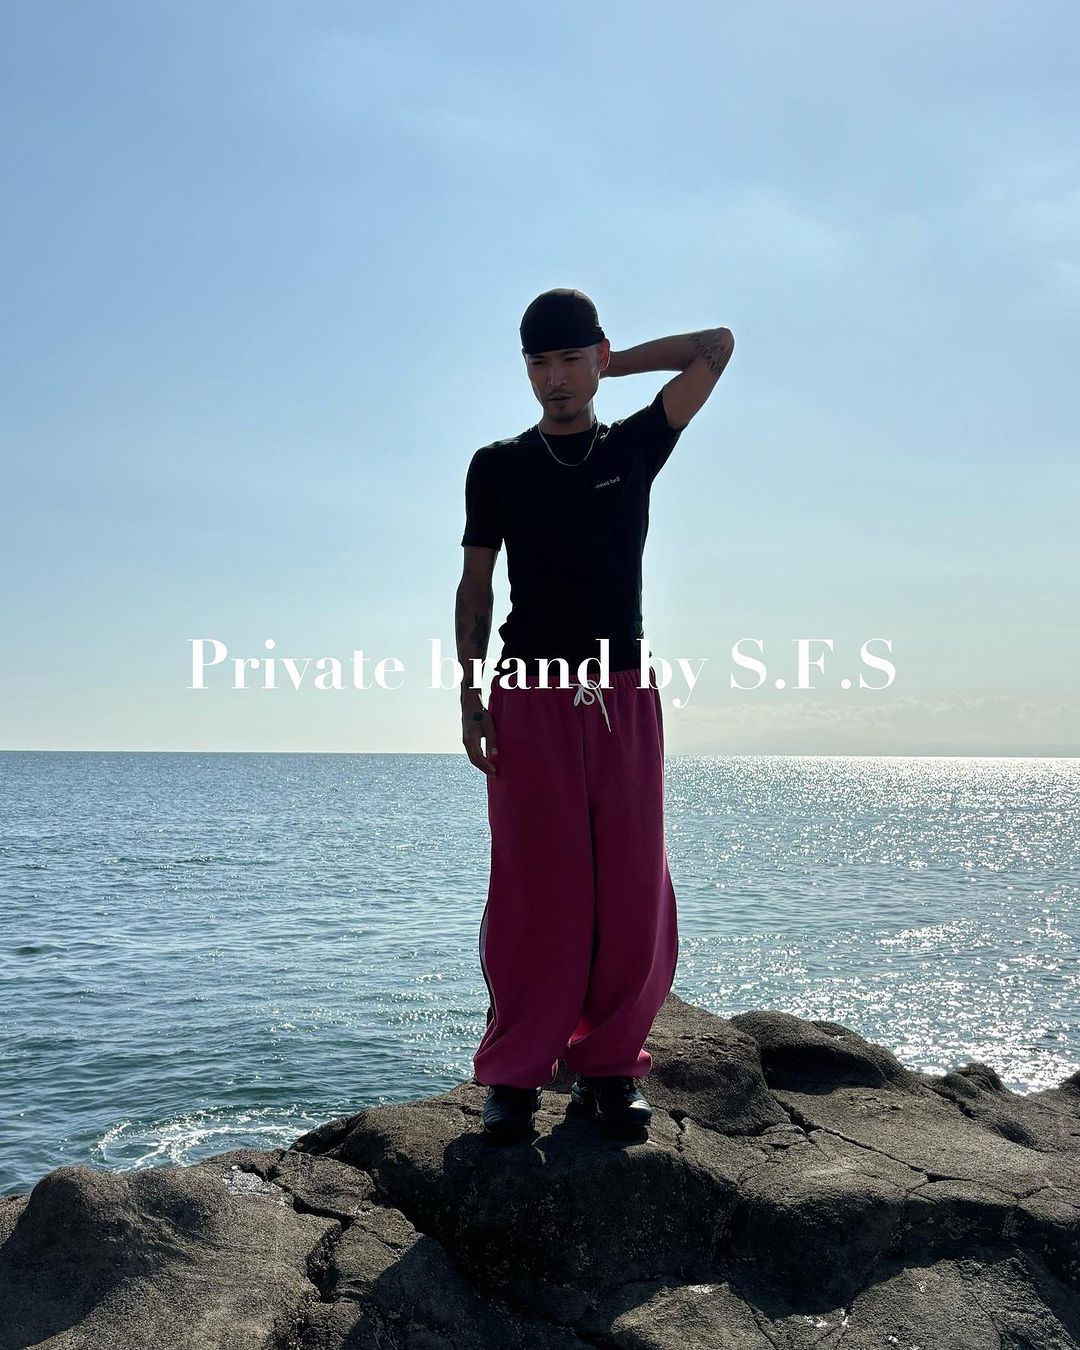 Private brand by S.F.S × FUTURE ARCHIVE 初別注が10/21 発売 (フューチャー アーカイブ)